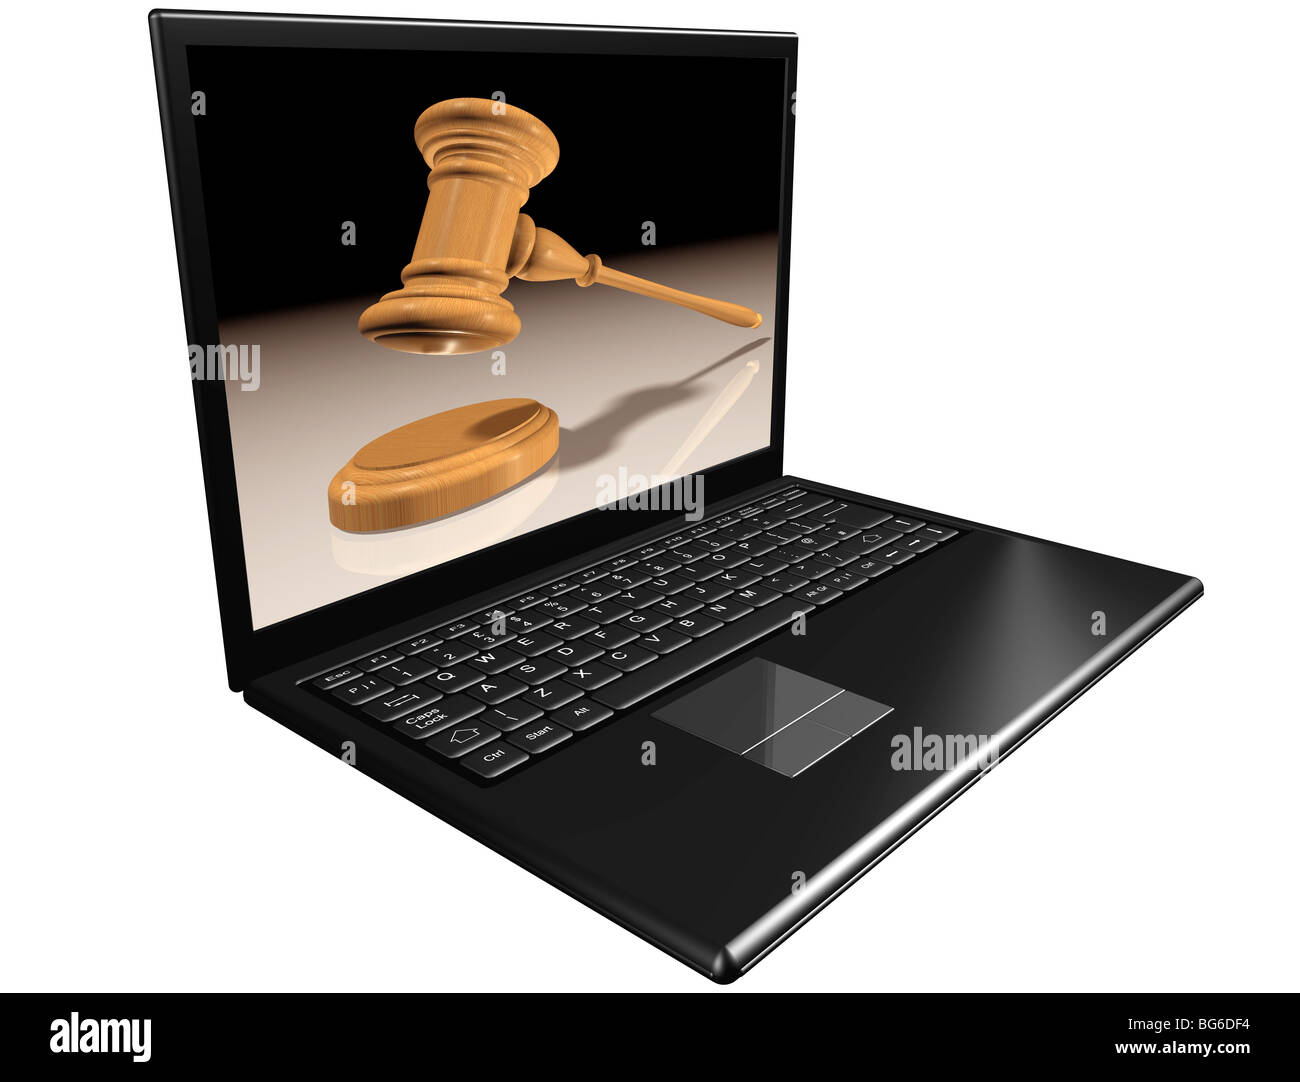 Isolierte Abbildung von einem Notebook-Computer für Internet-Auktionen Stockfoto